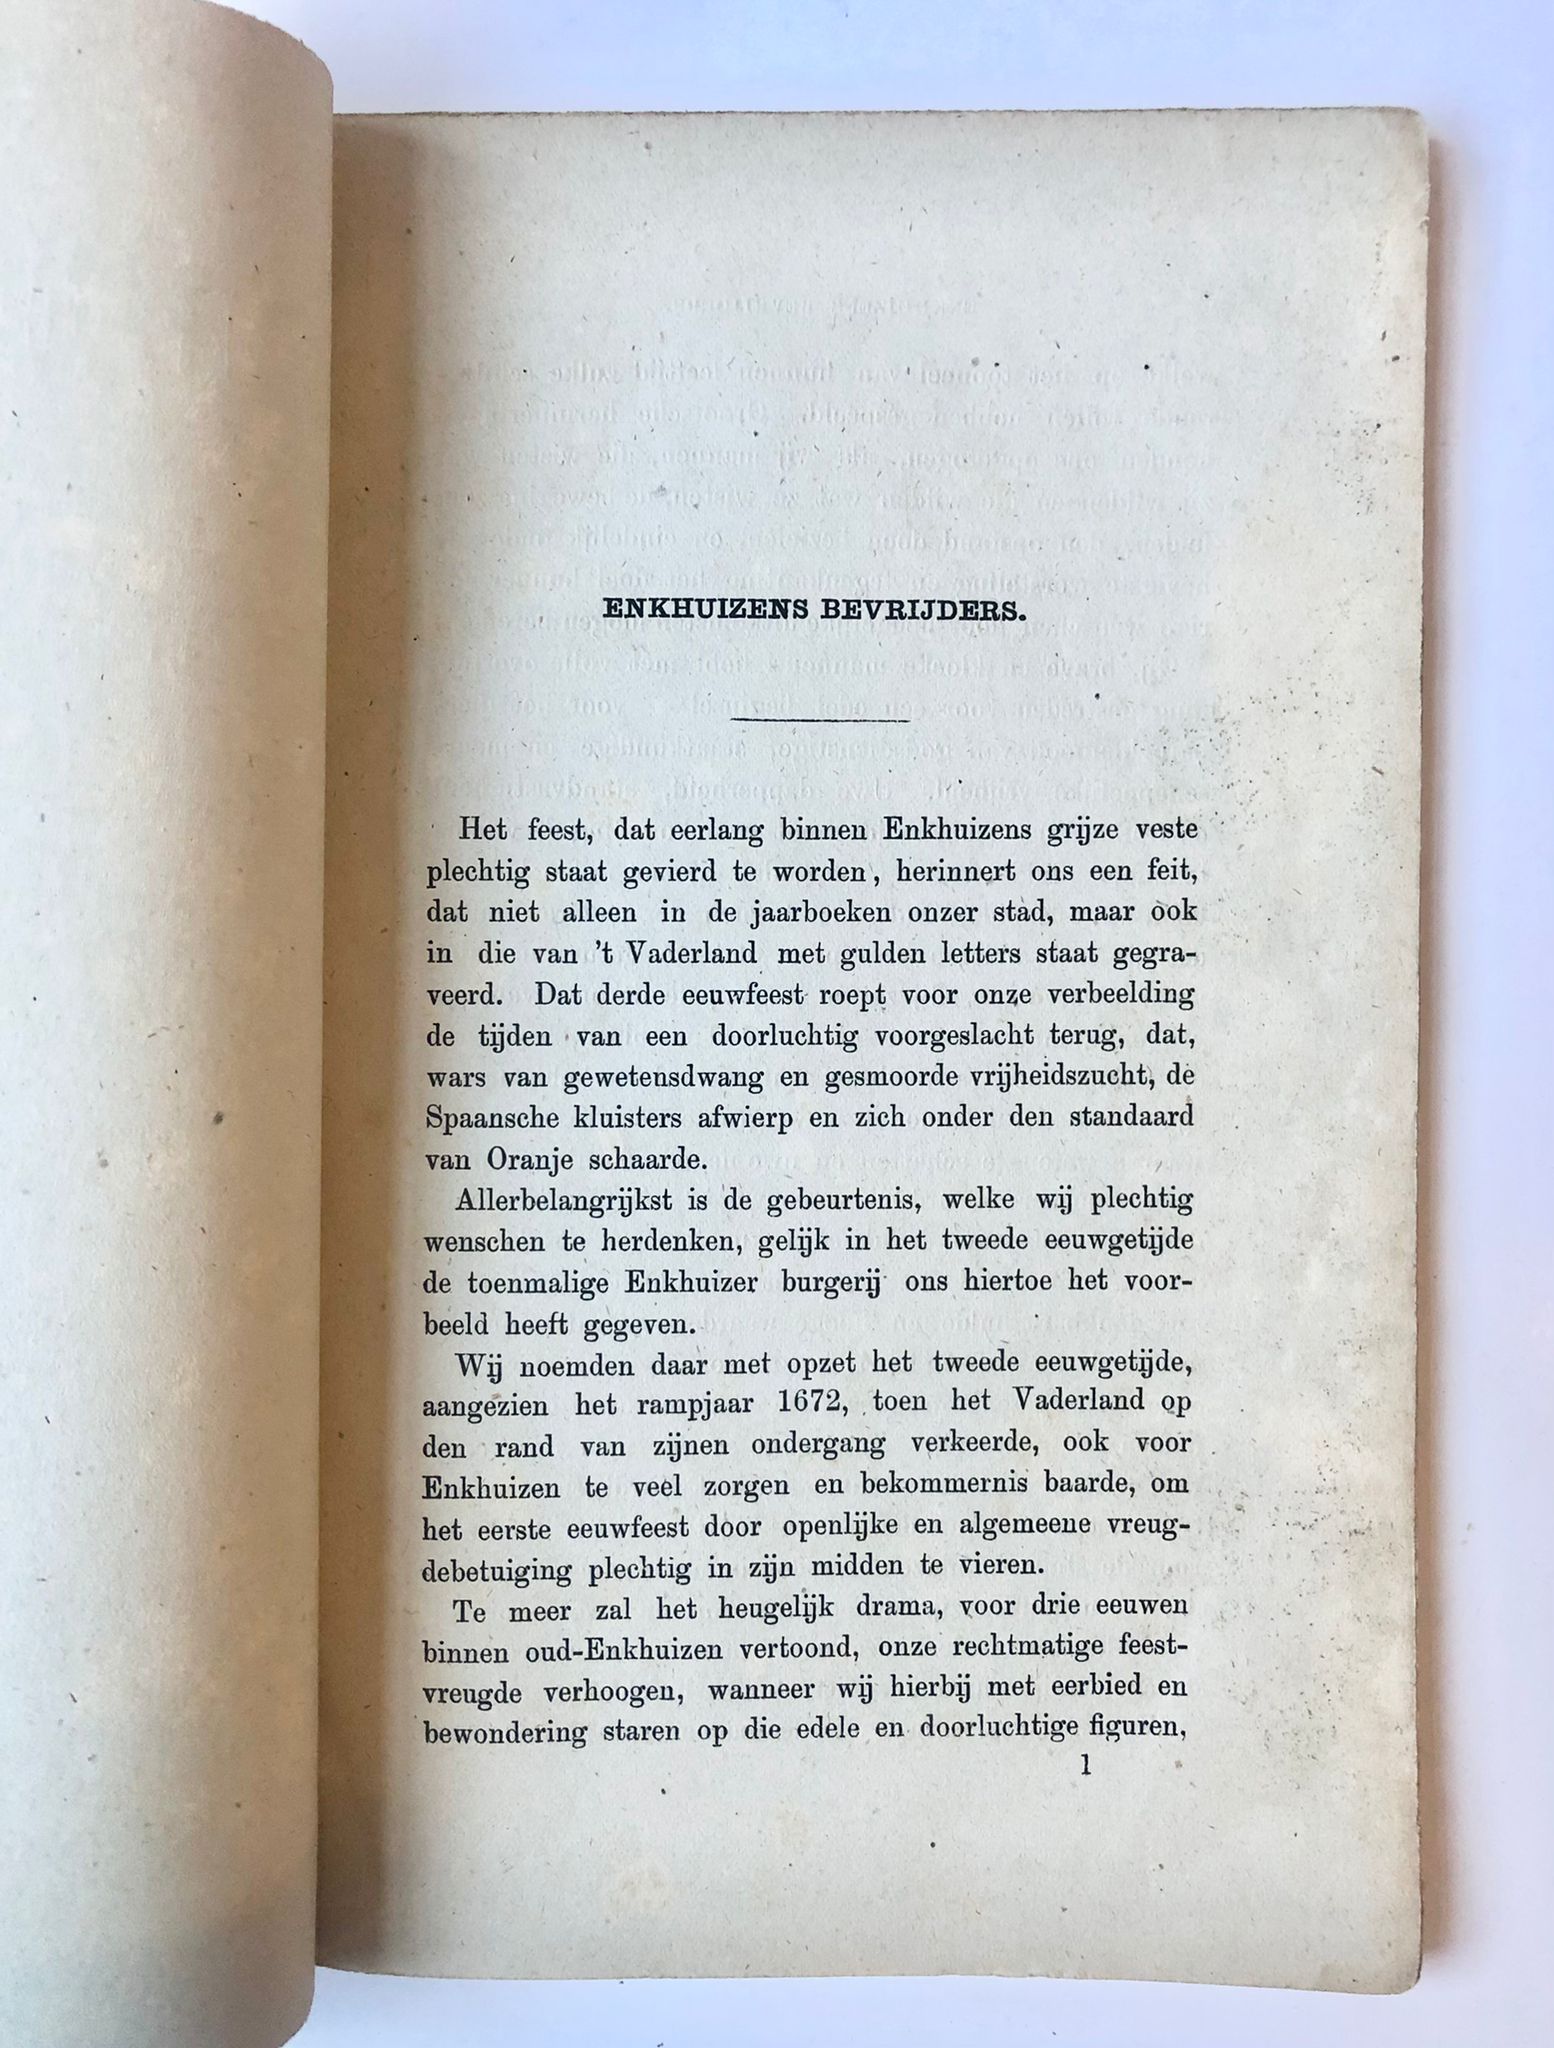 [Enkhuizen, Noord-Holland] Oud-Enkhuizen of het merkwaardige jaar 1572, Na drie eeuwen plechtig herdacht door Nieuw-Enkhuizens verheugde burgers, door T. Knuivers, J. Groot, Beverwijk, 1872, 71 pp.